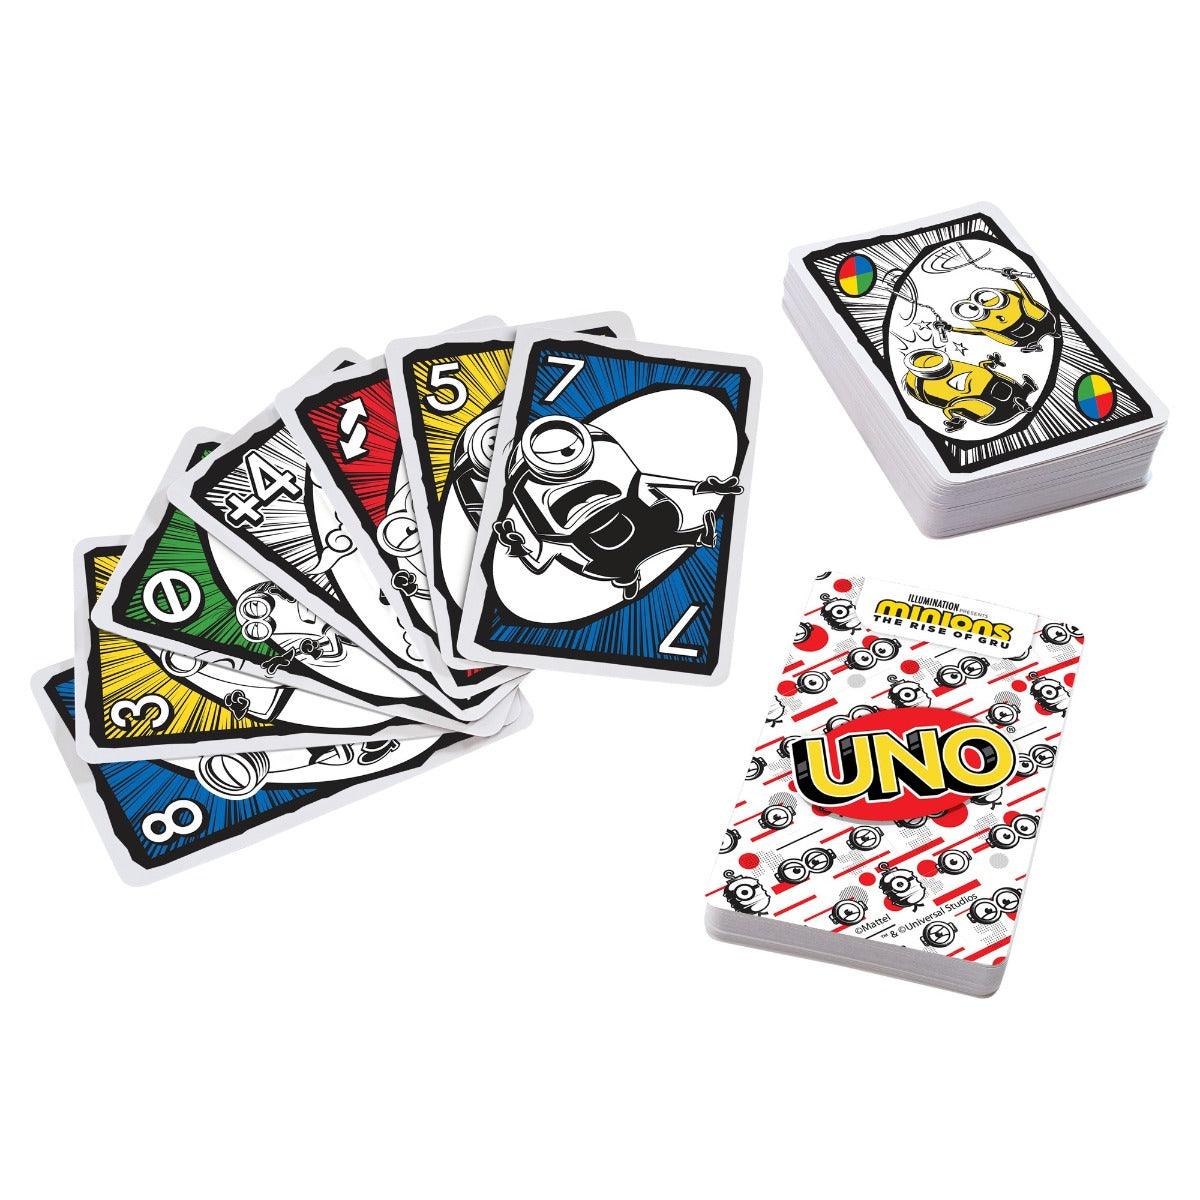 Uno Minions Card Game